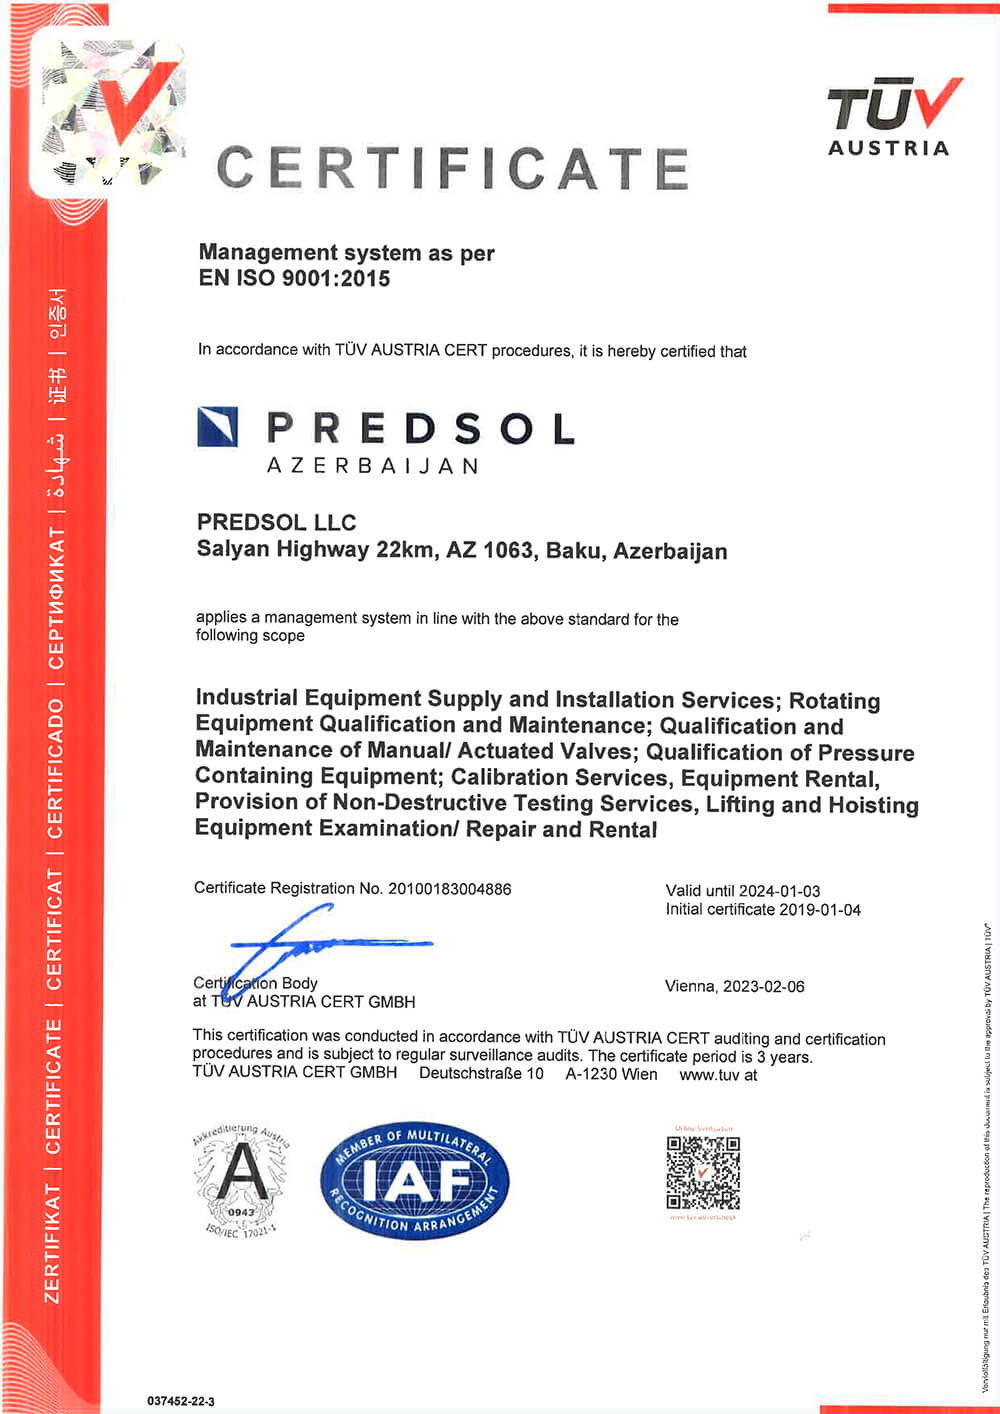 PREDSOL ISO certificate